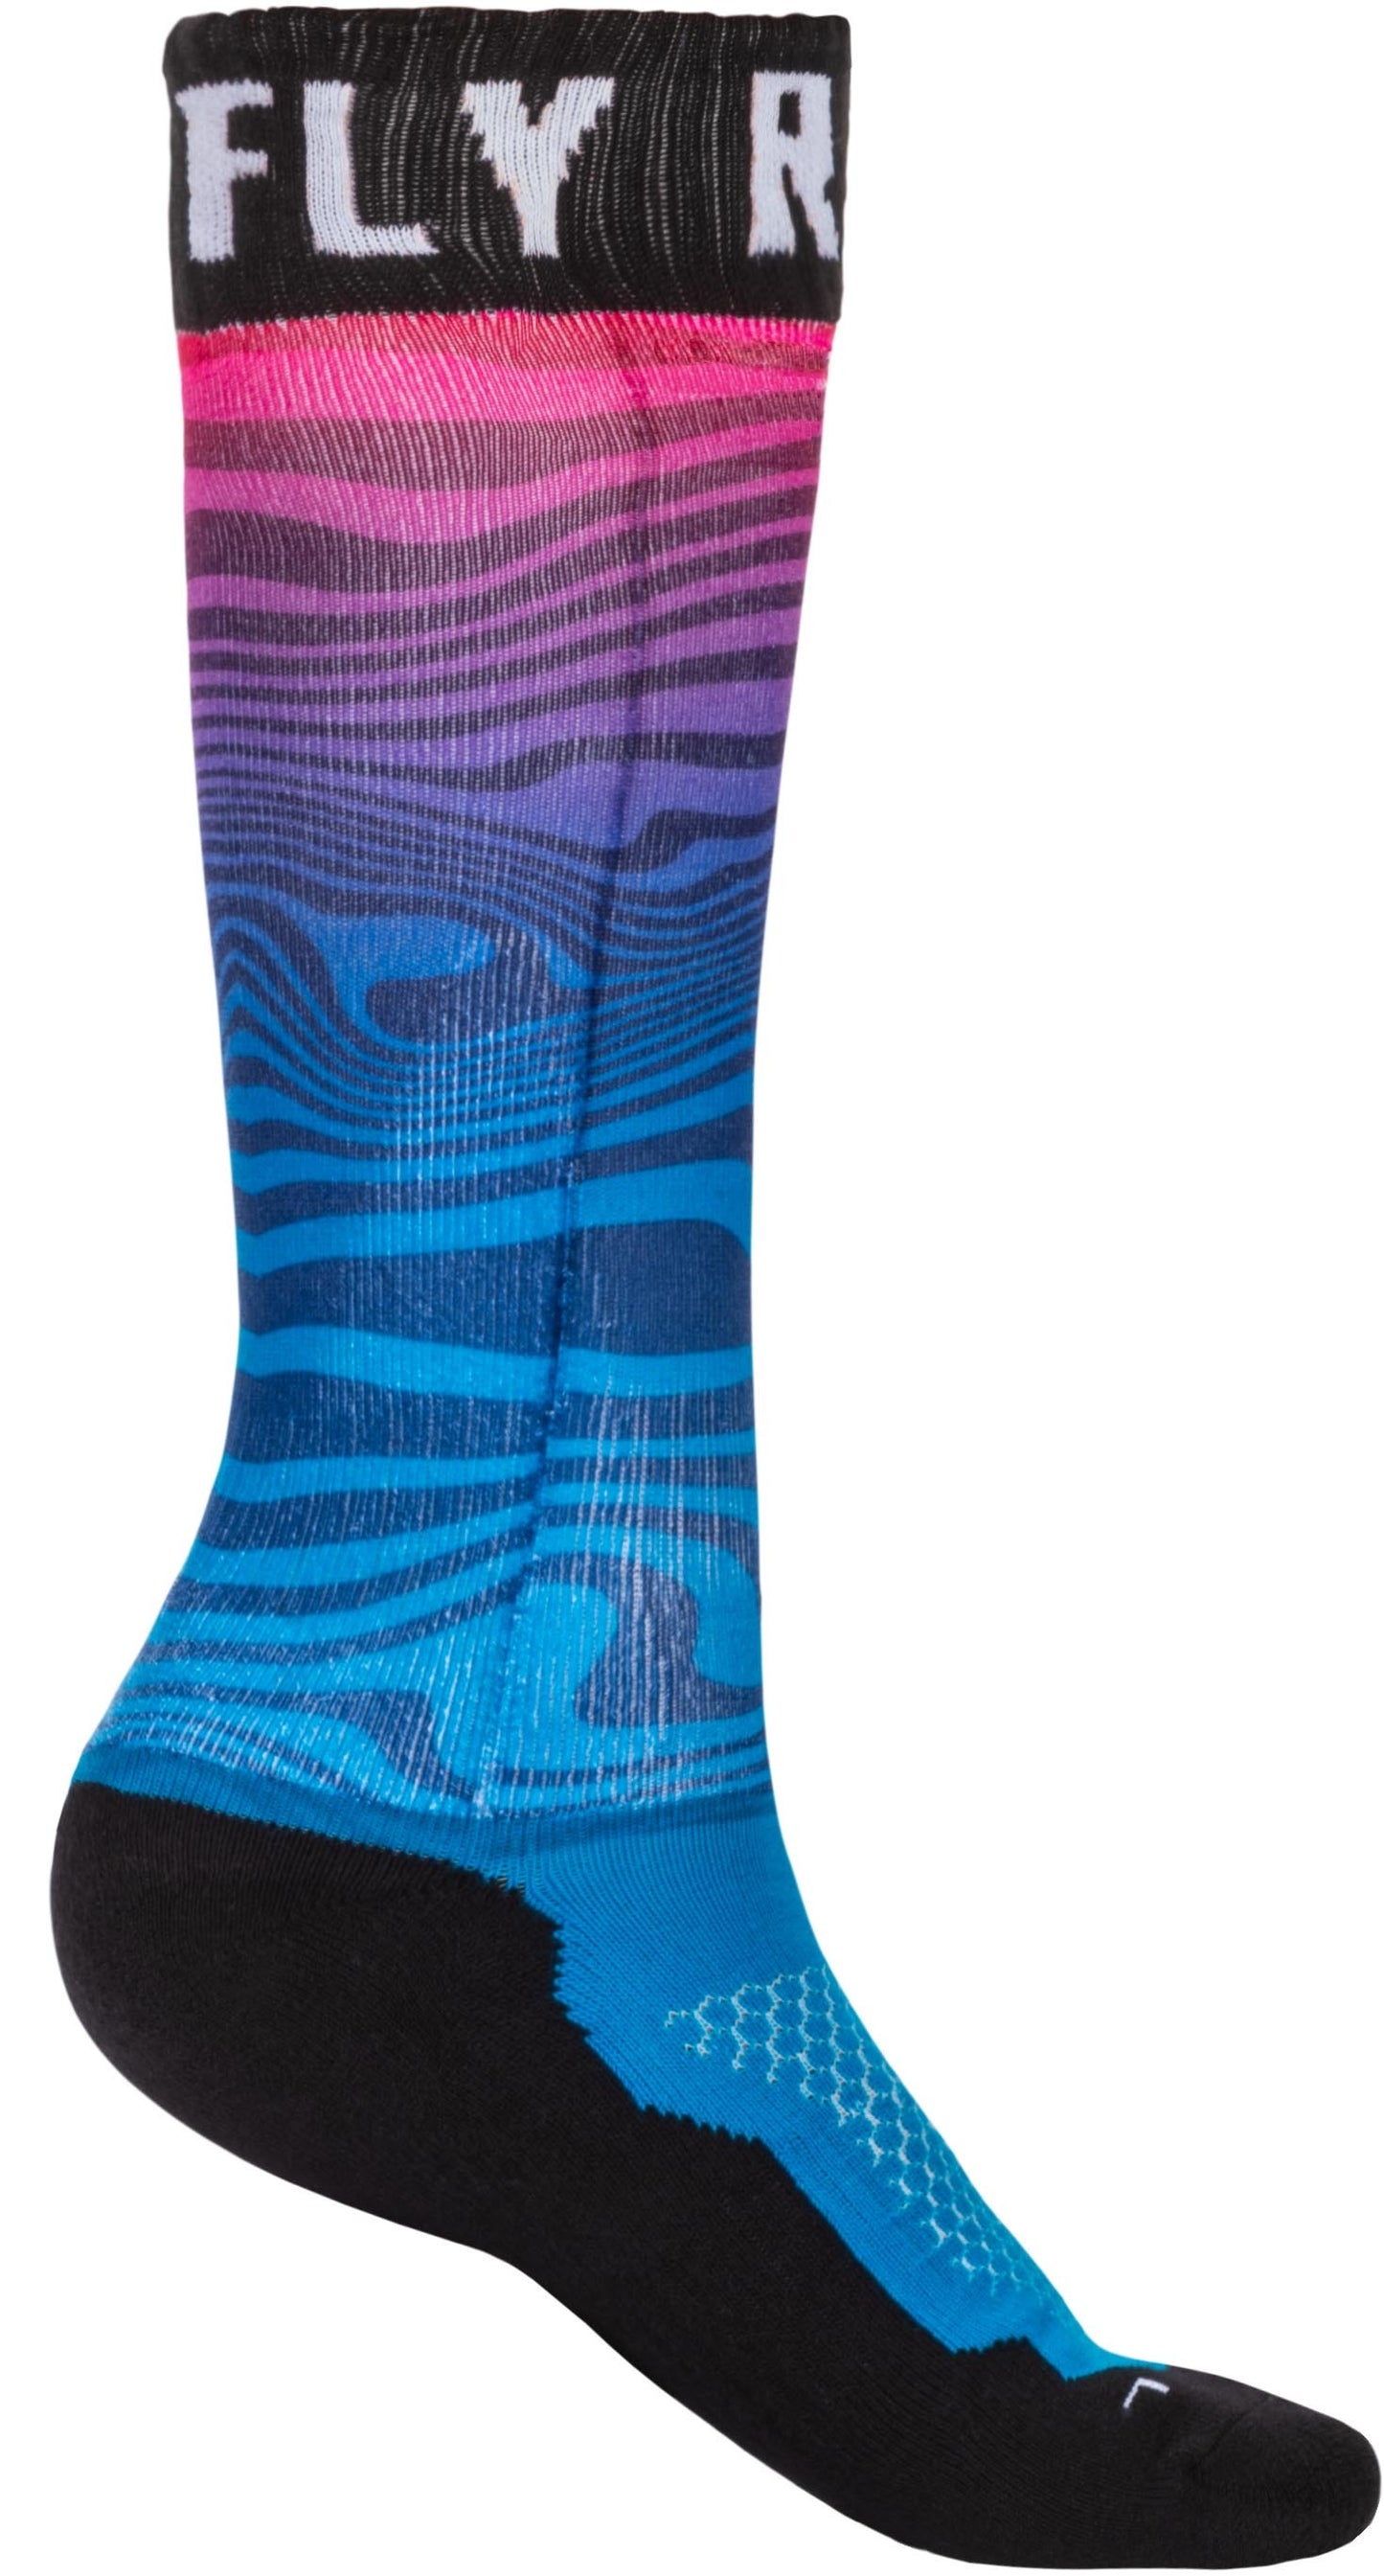 Mx Pro Sock Thin Blue/Pink/Black Lg/Xl